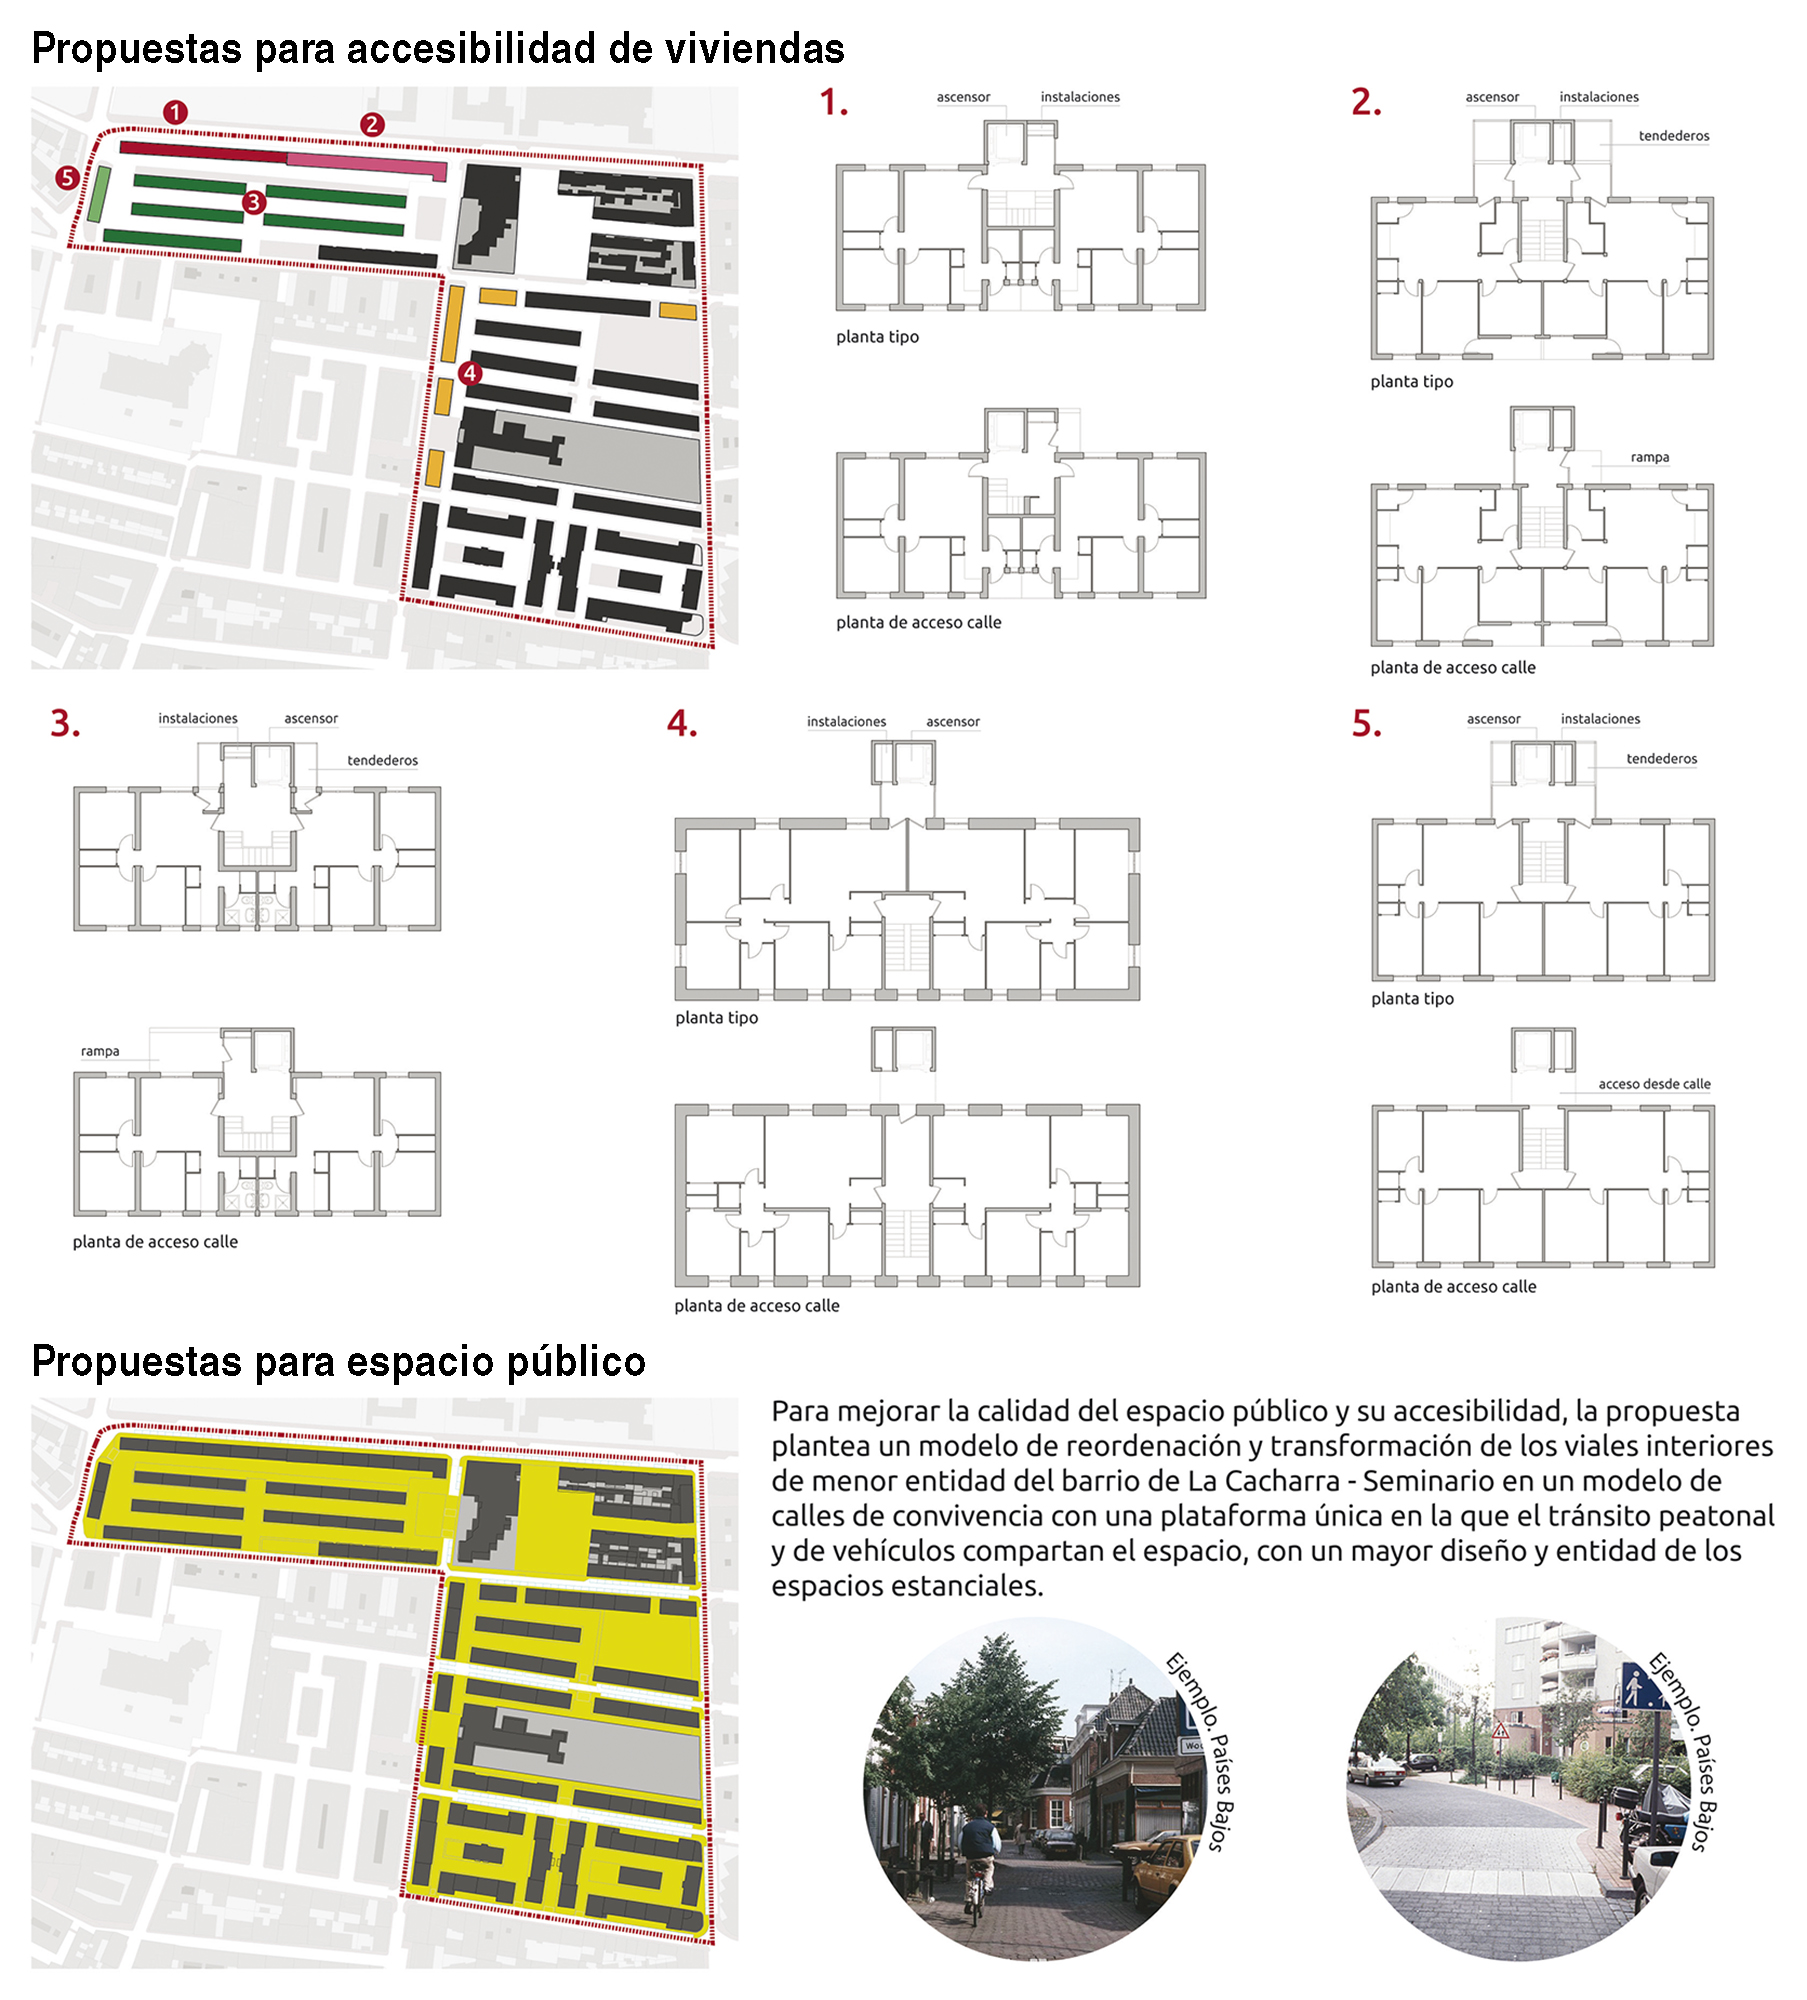 Más Ávila – ARU. Delimitación y planificación del Área de Regeneración Urbana (ARU) “La Cacharra - Seminario”